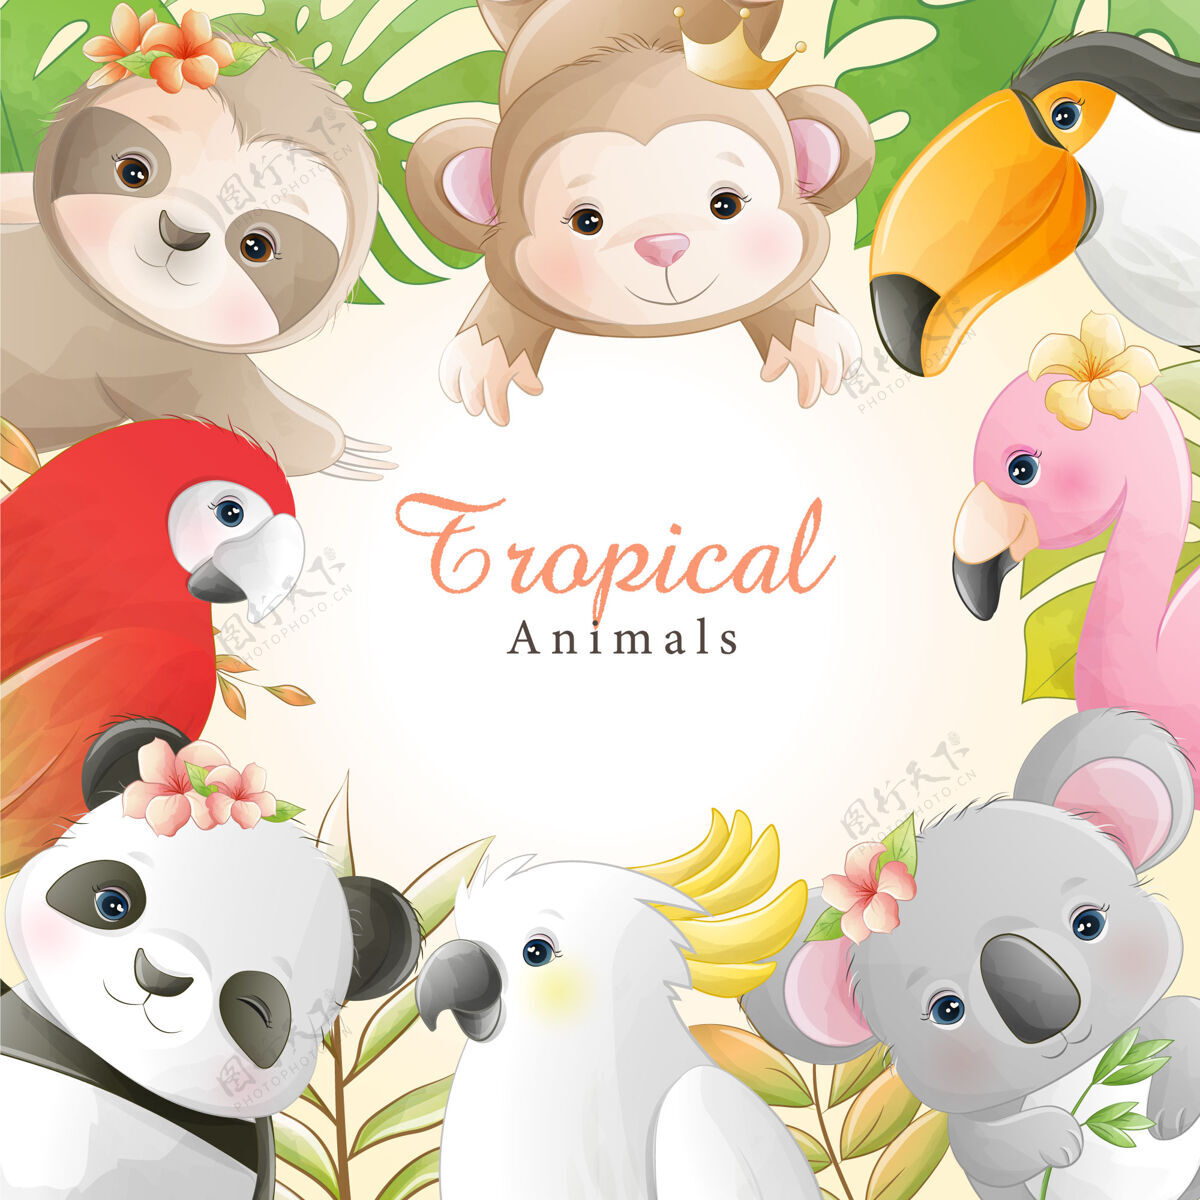 可爱水彩画可爱的卡通热带动物与花卉动物猴子装饰